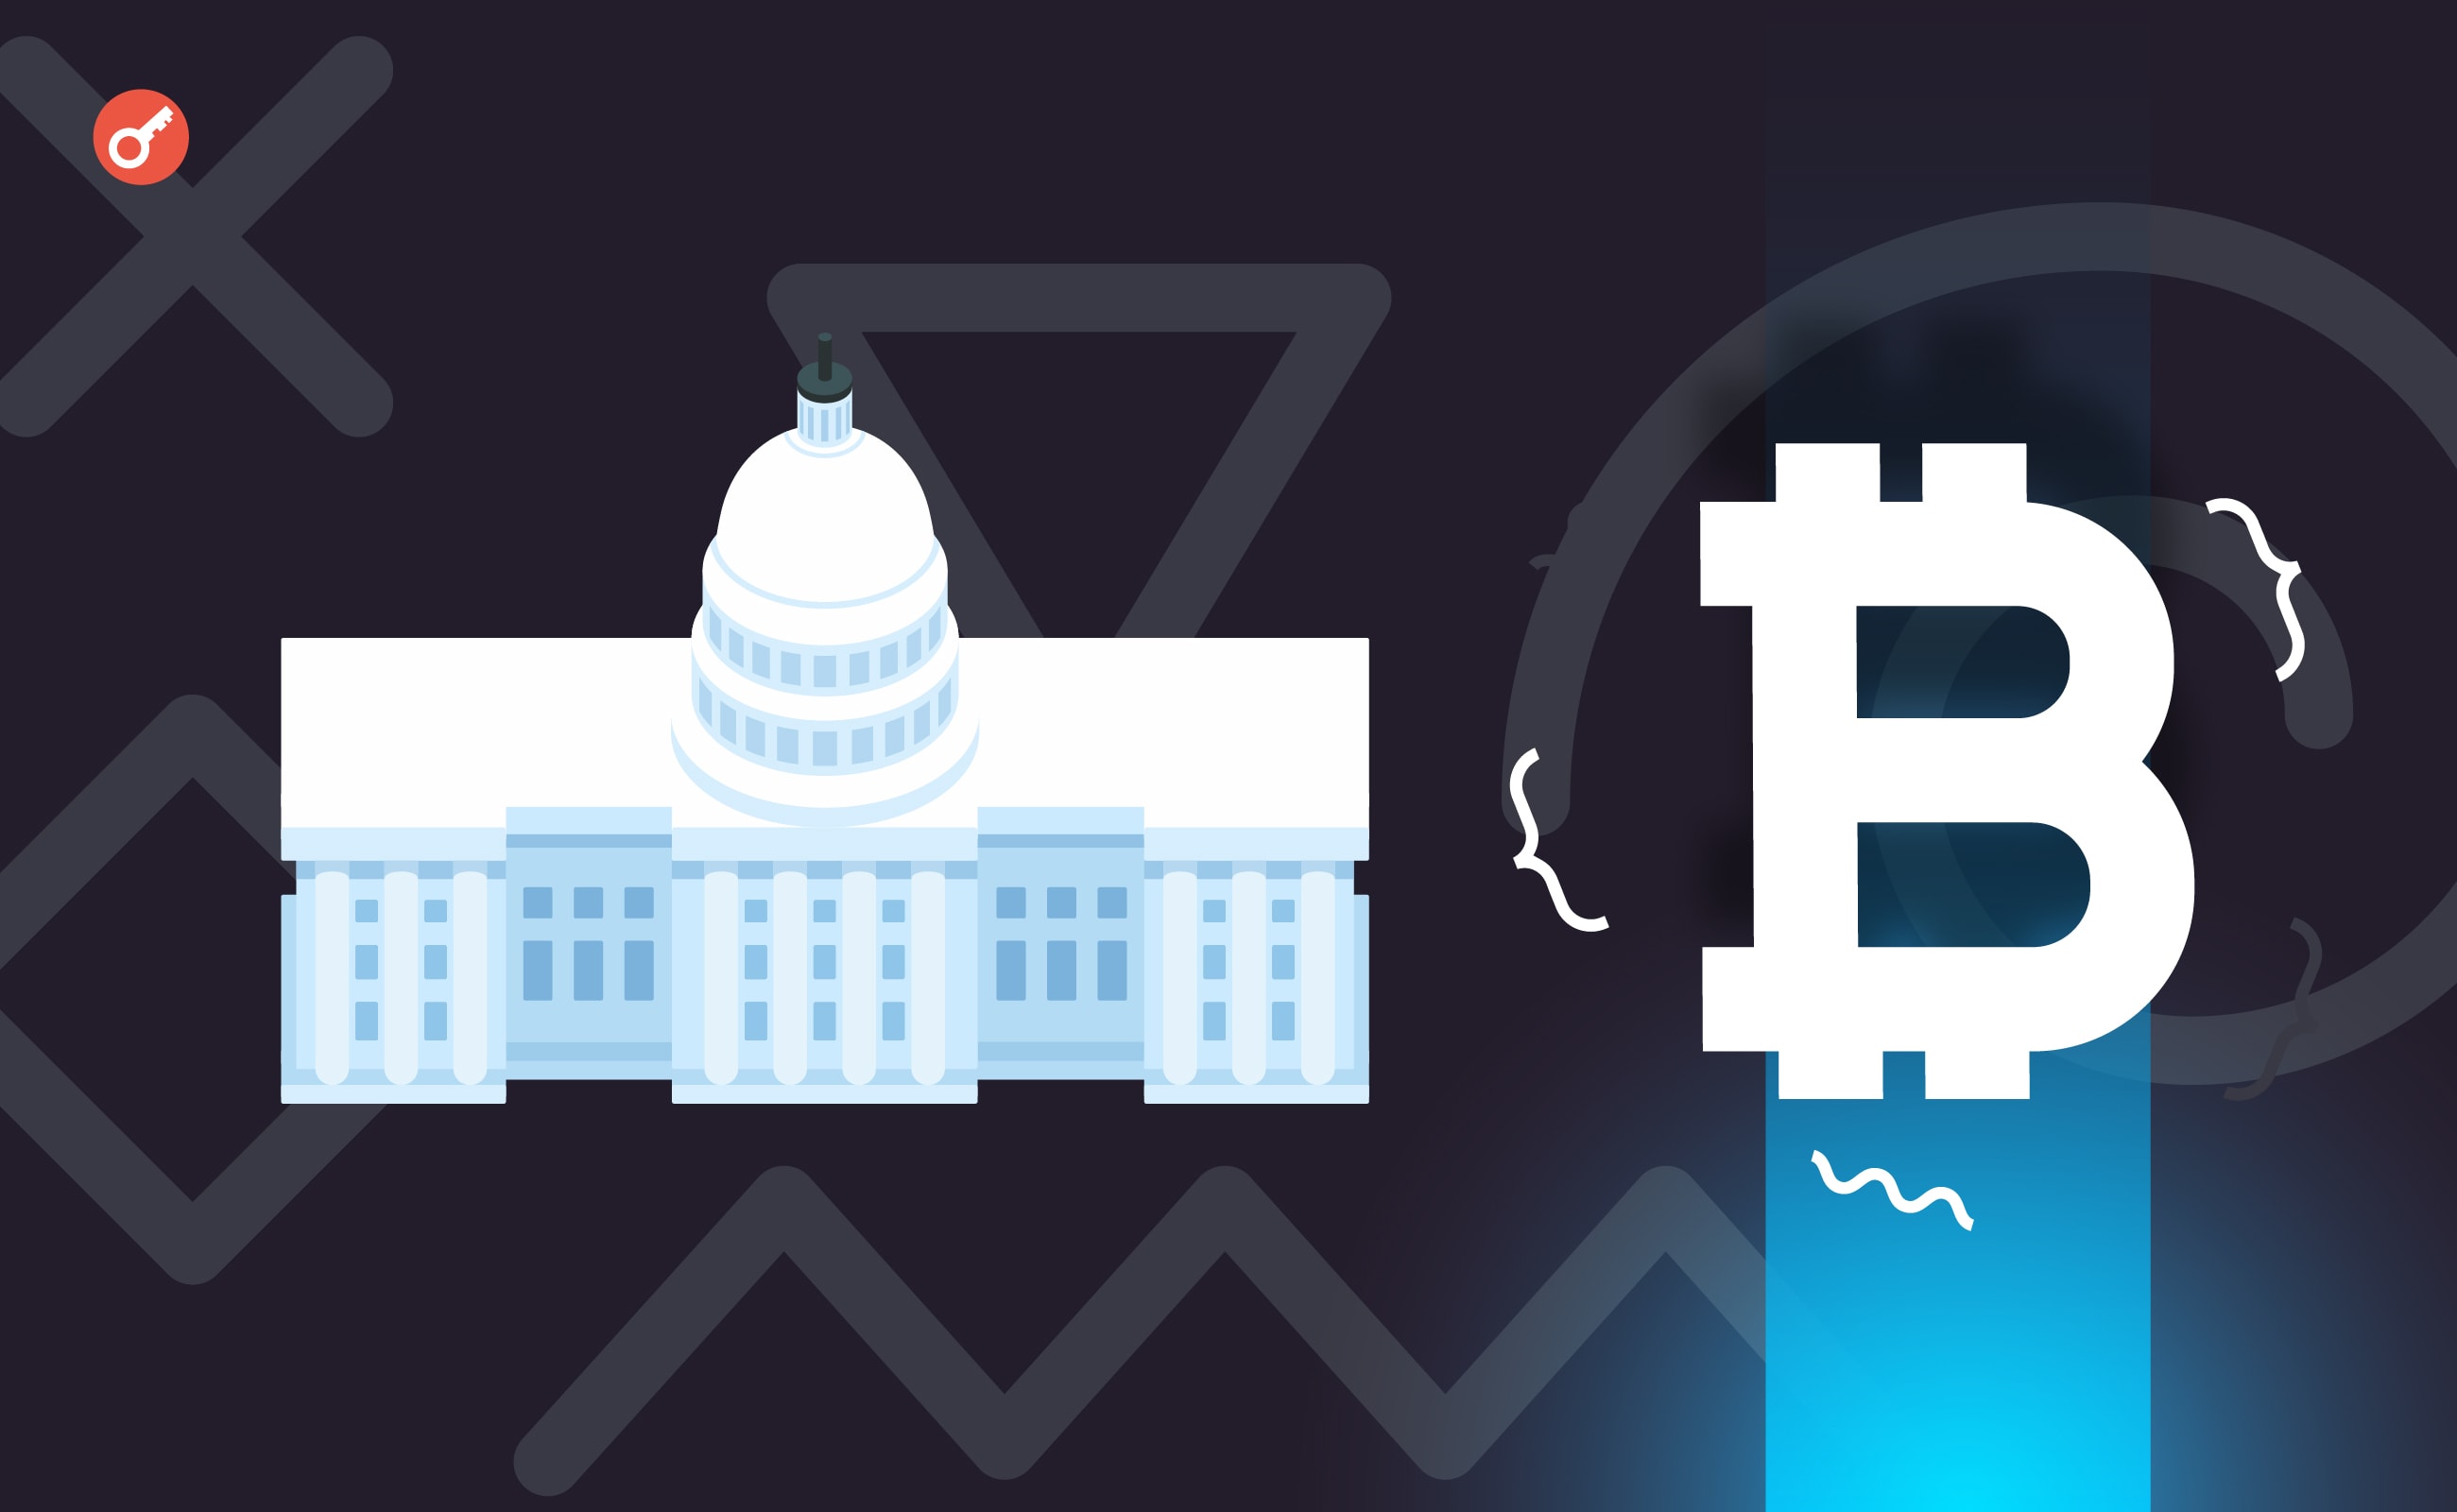 Мінфін США запросить у Конгресу більше повноважень для боротьби з криптозлочинністю. Головний колаж новини.